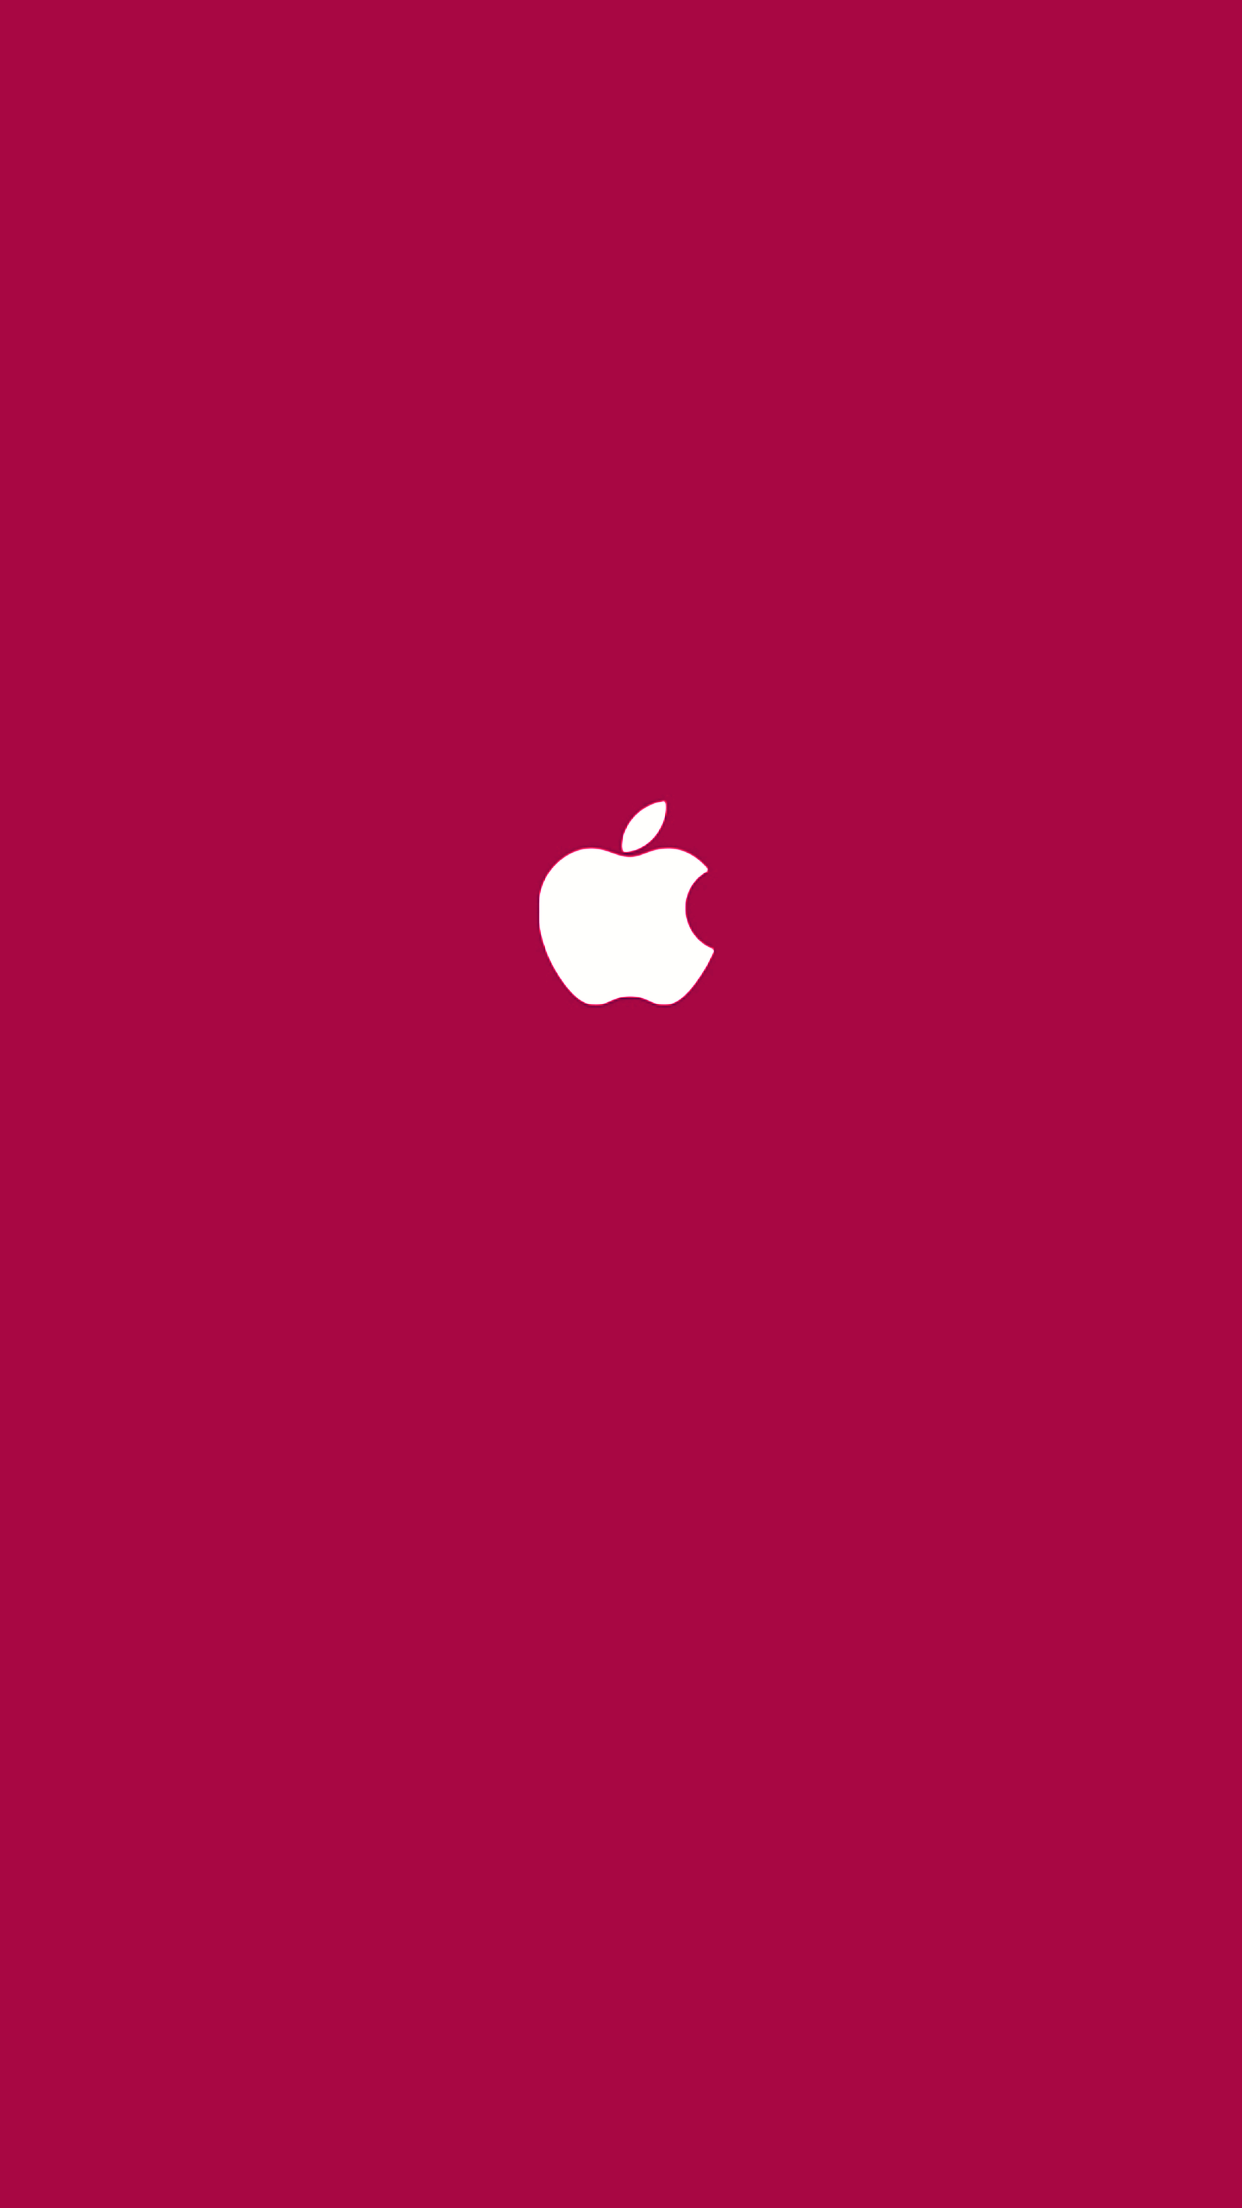 애플 로고 아이폰6S플러스 배경화면 핫핑크.png